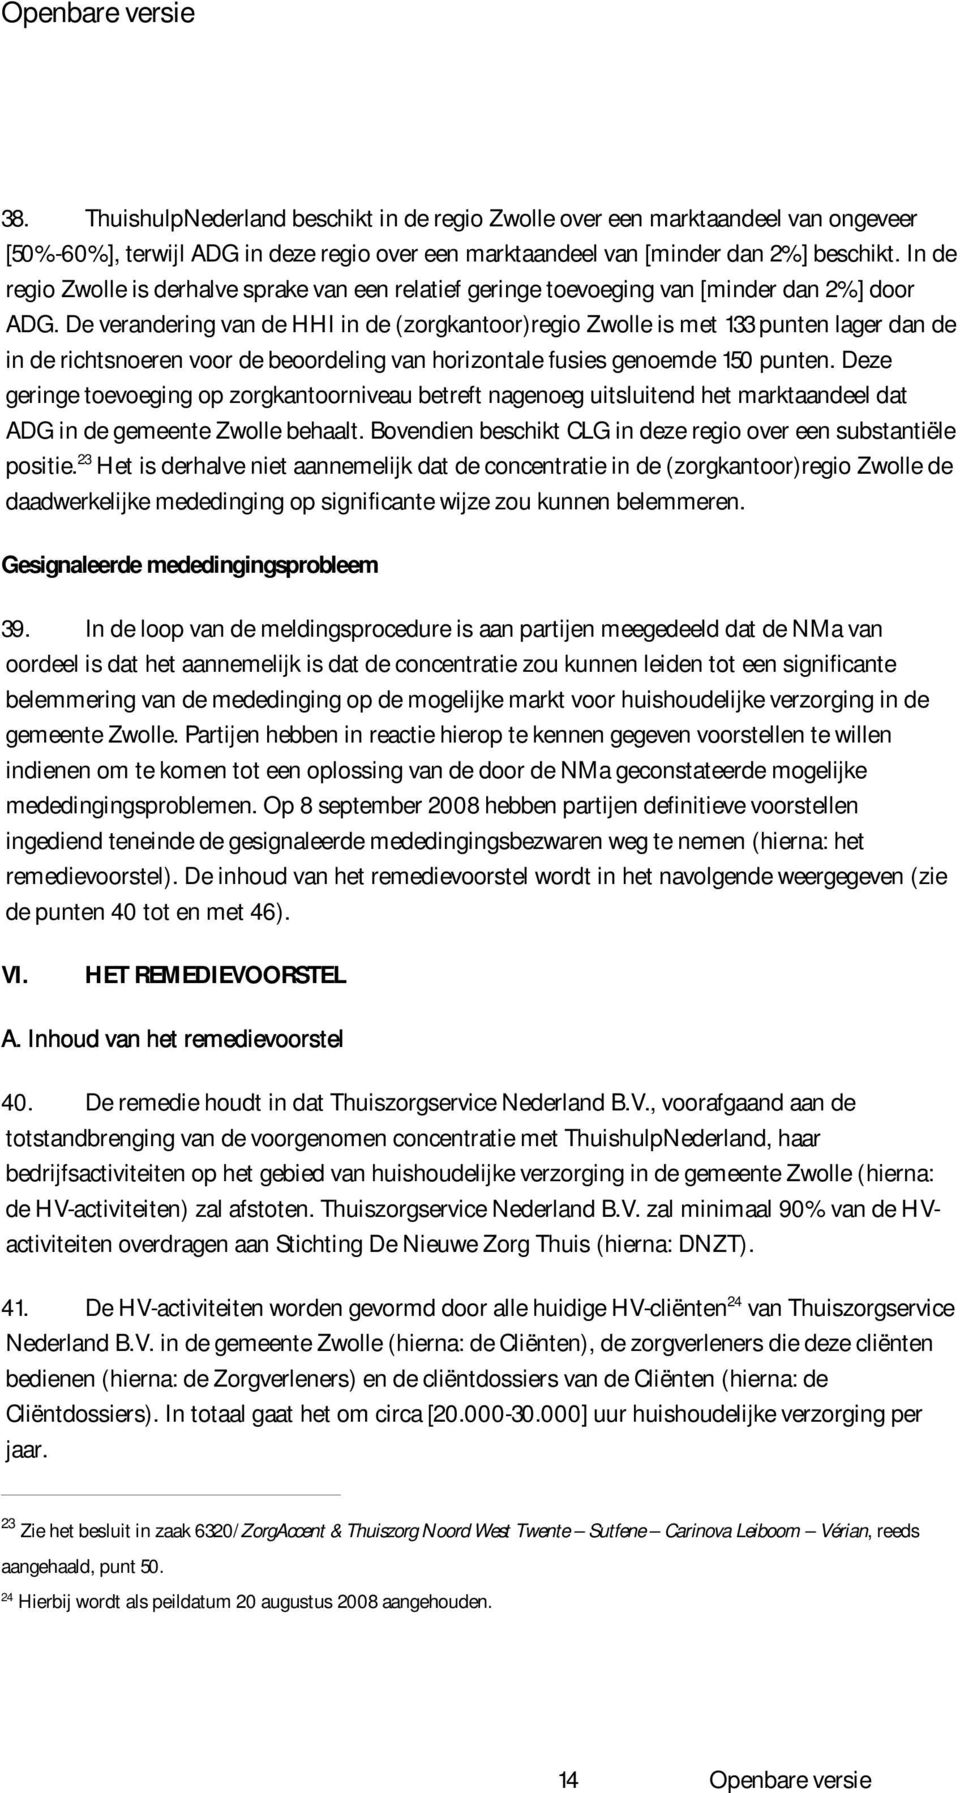 De verandering van de HHI in de (zorgkantoor)regio Zwolle is met 133 punten lager dan de in de richtsnoeren voor de beoordeling van horizontale fusies genoemde 150 punten.